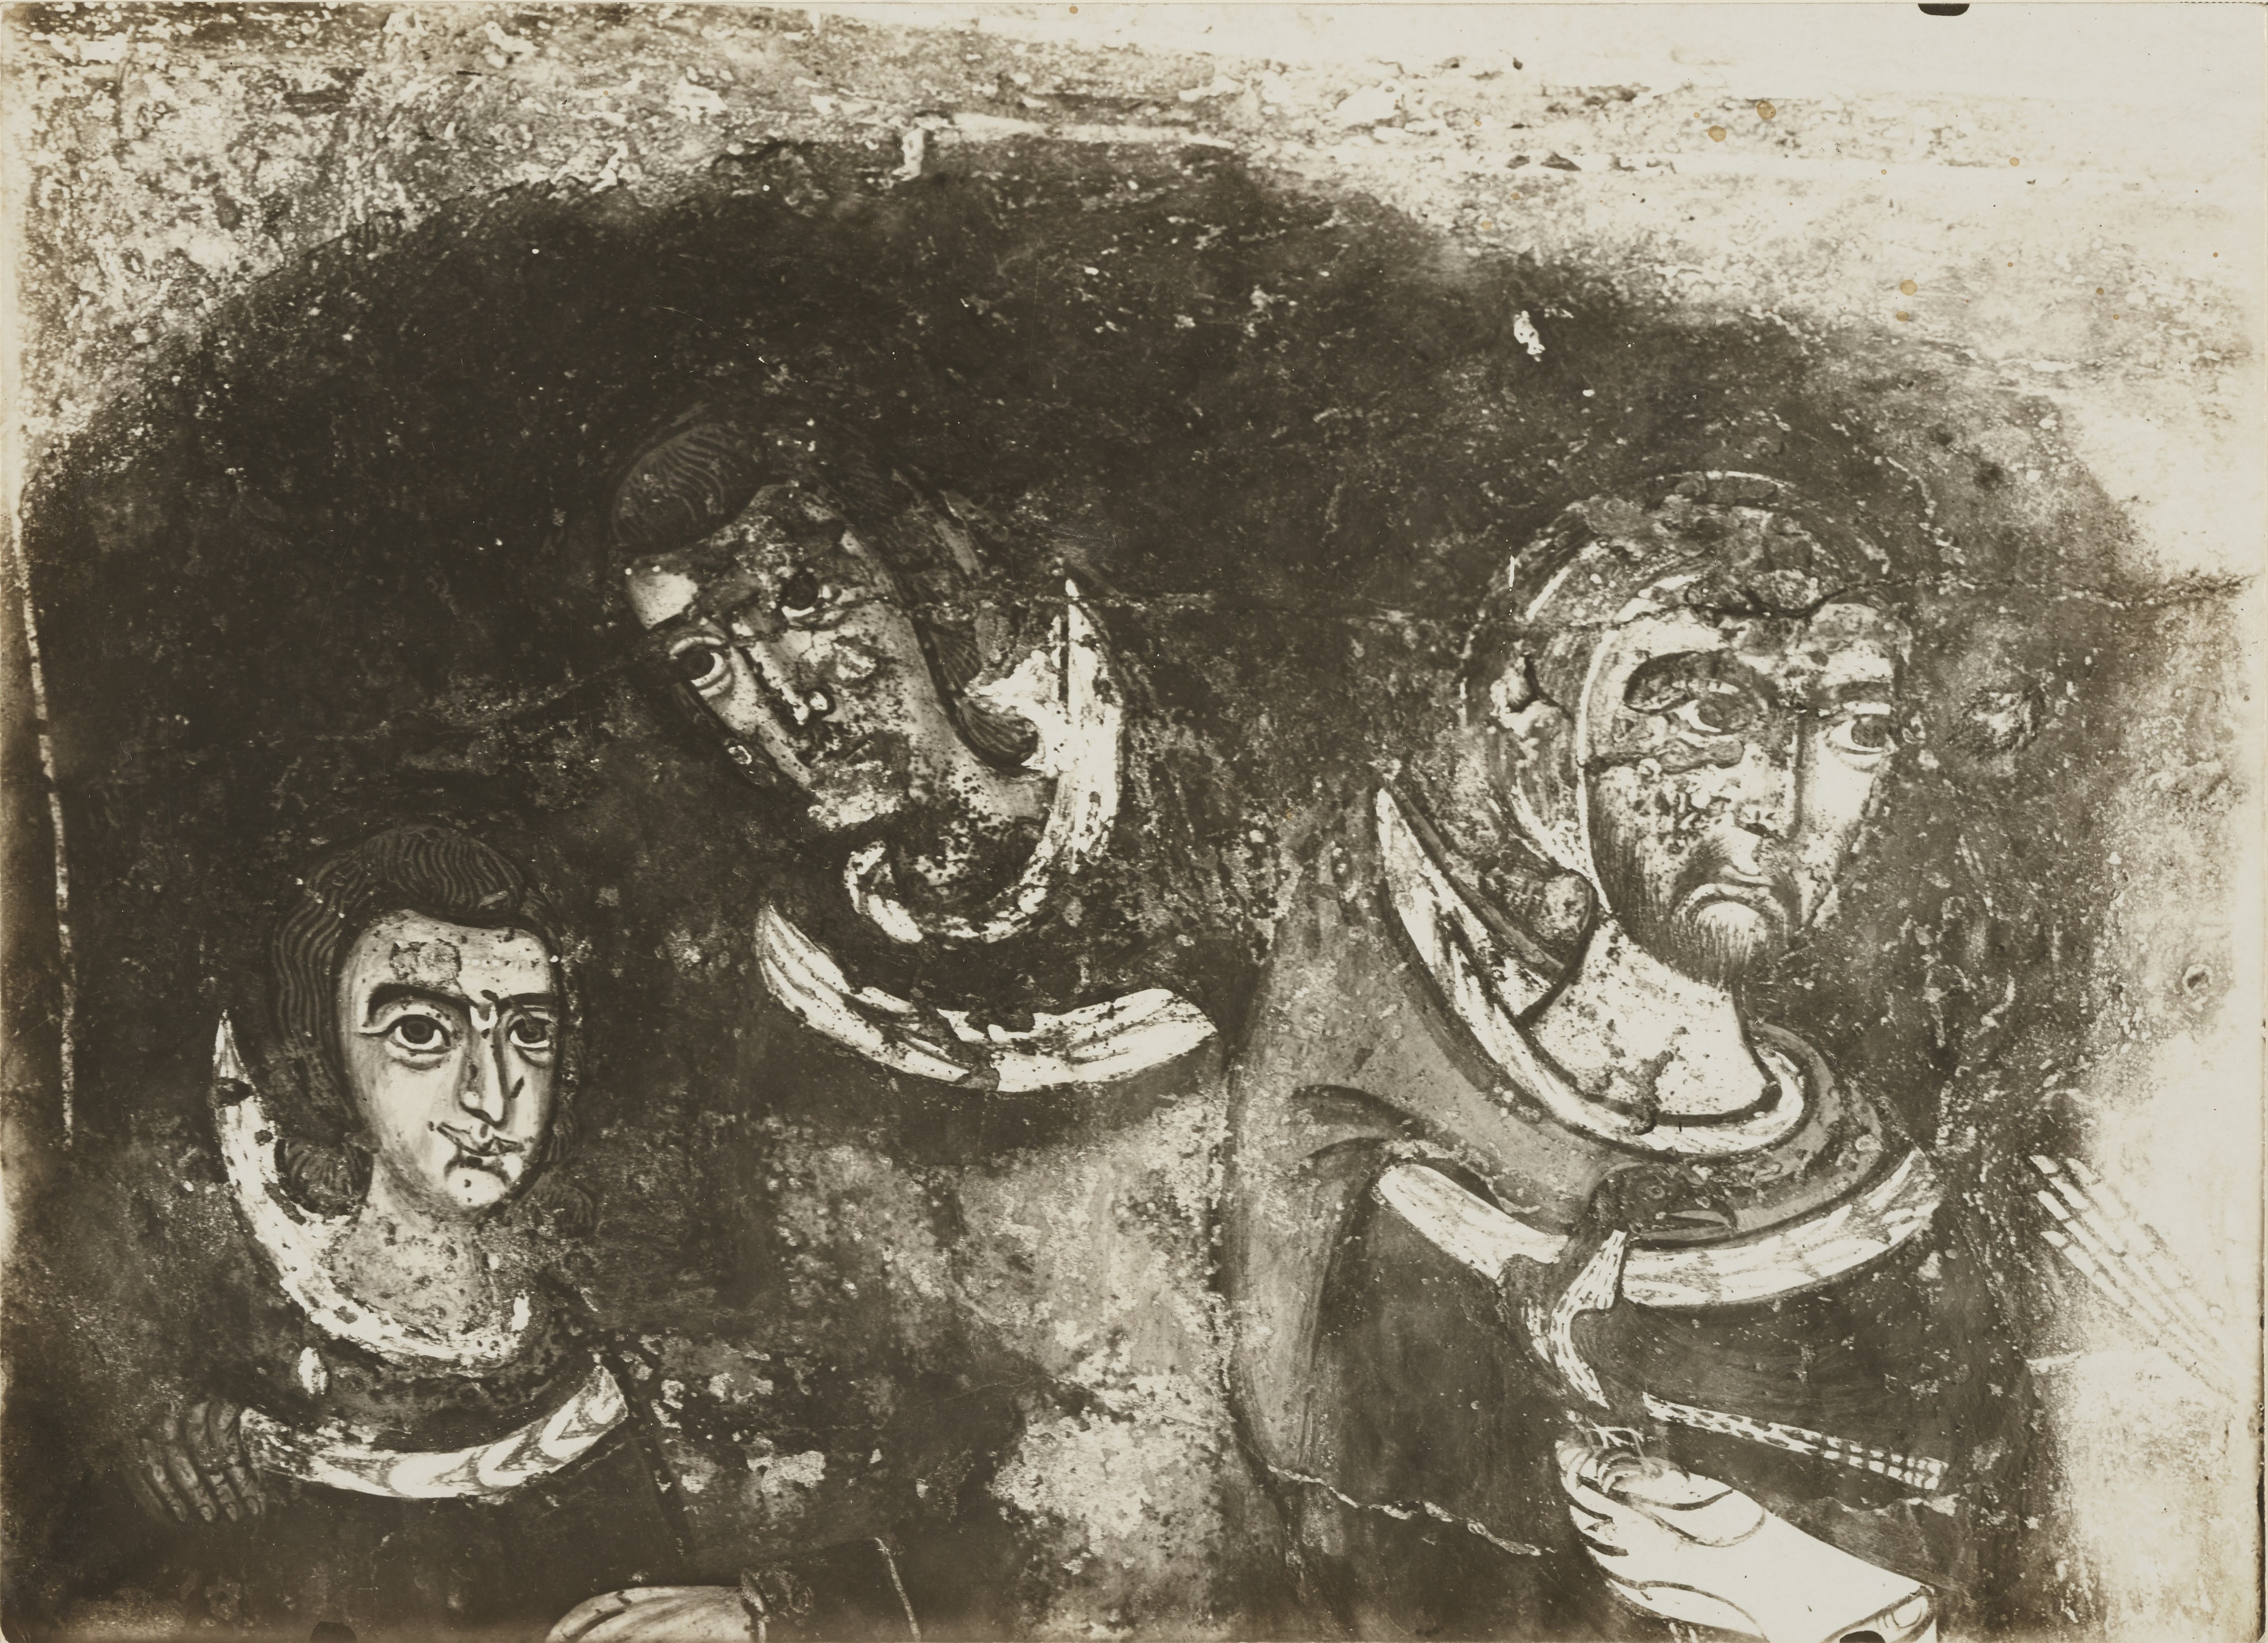 Fotografo non identificato, Melfi - Chiesa rupestre di S. Margherita, Contrasto tra i vivi e i morti, 1926-1950, gelatina ai sali d'argento, MPI6061804